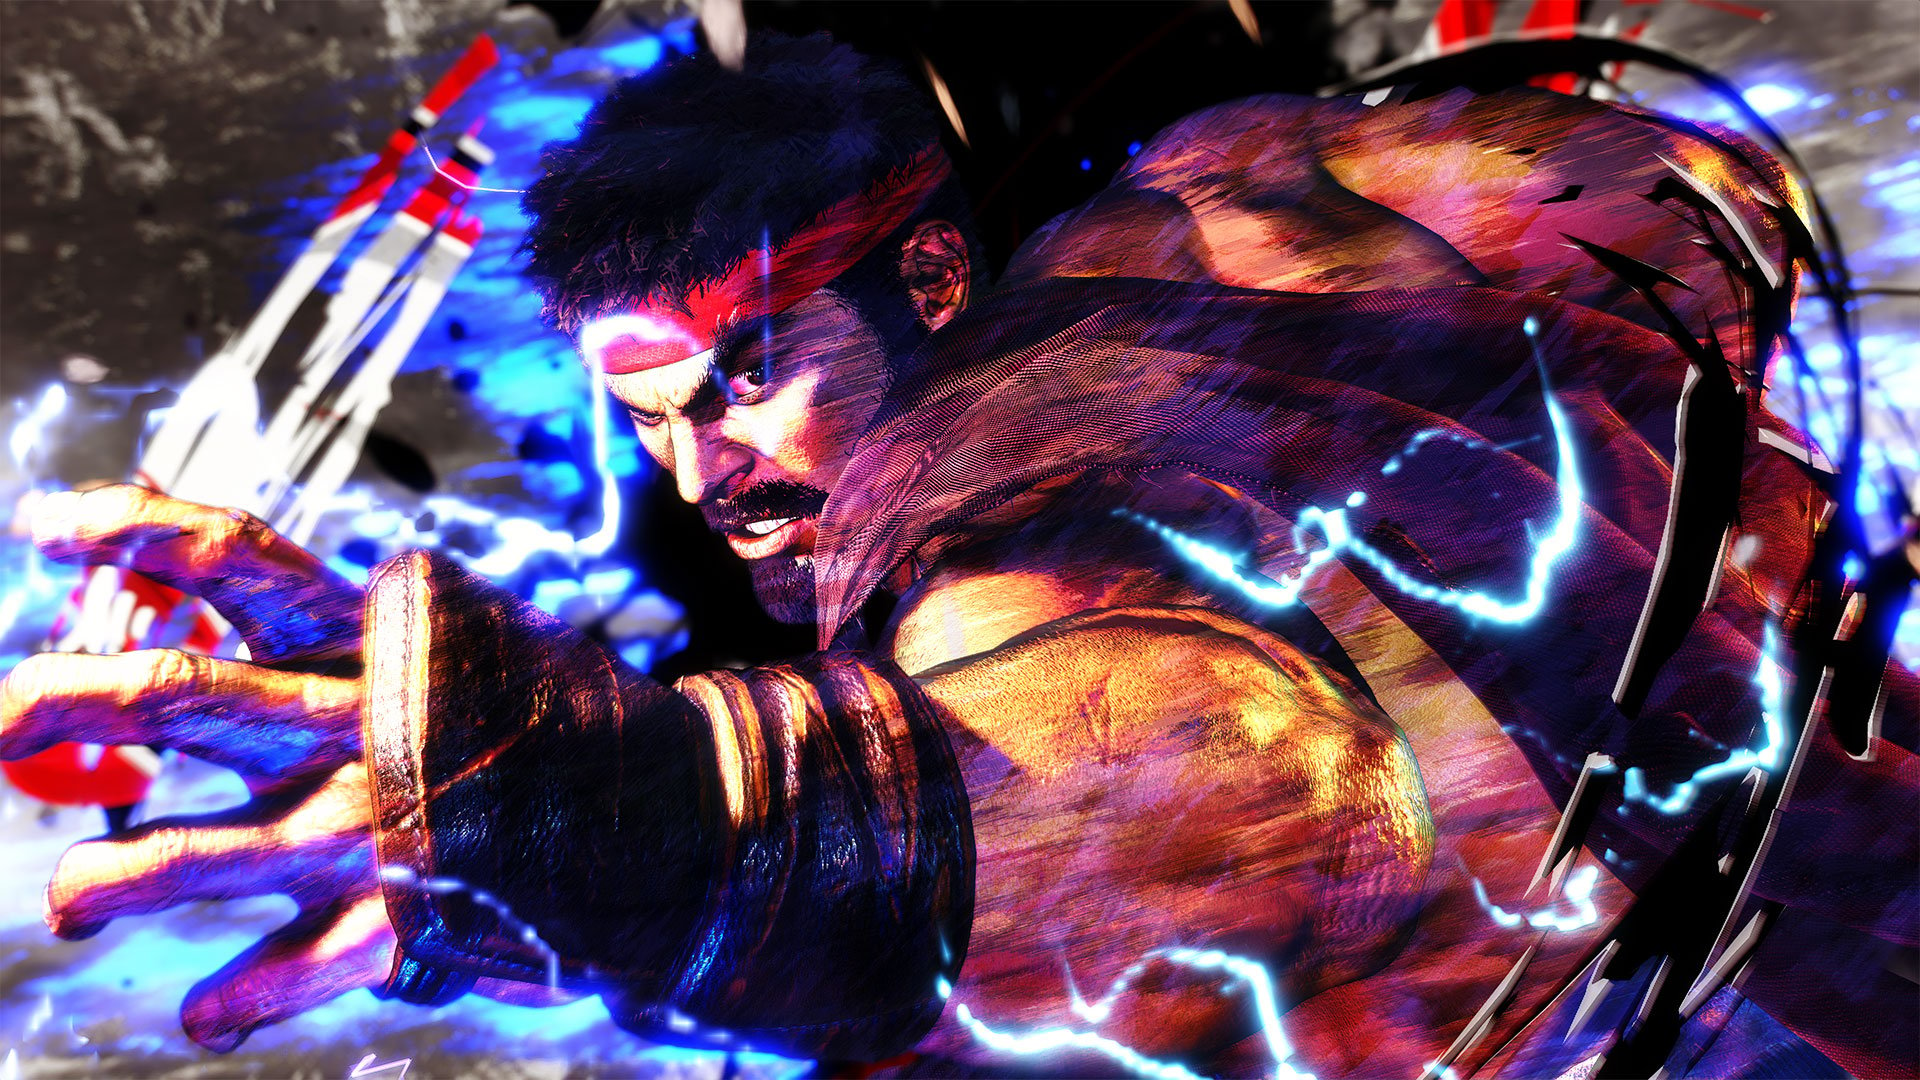 Street Fighter 6's release date has been confirmed for June